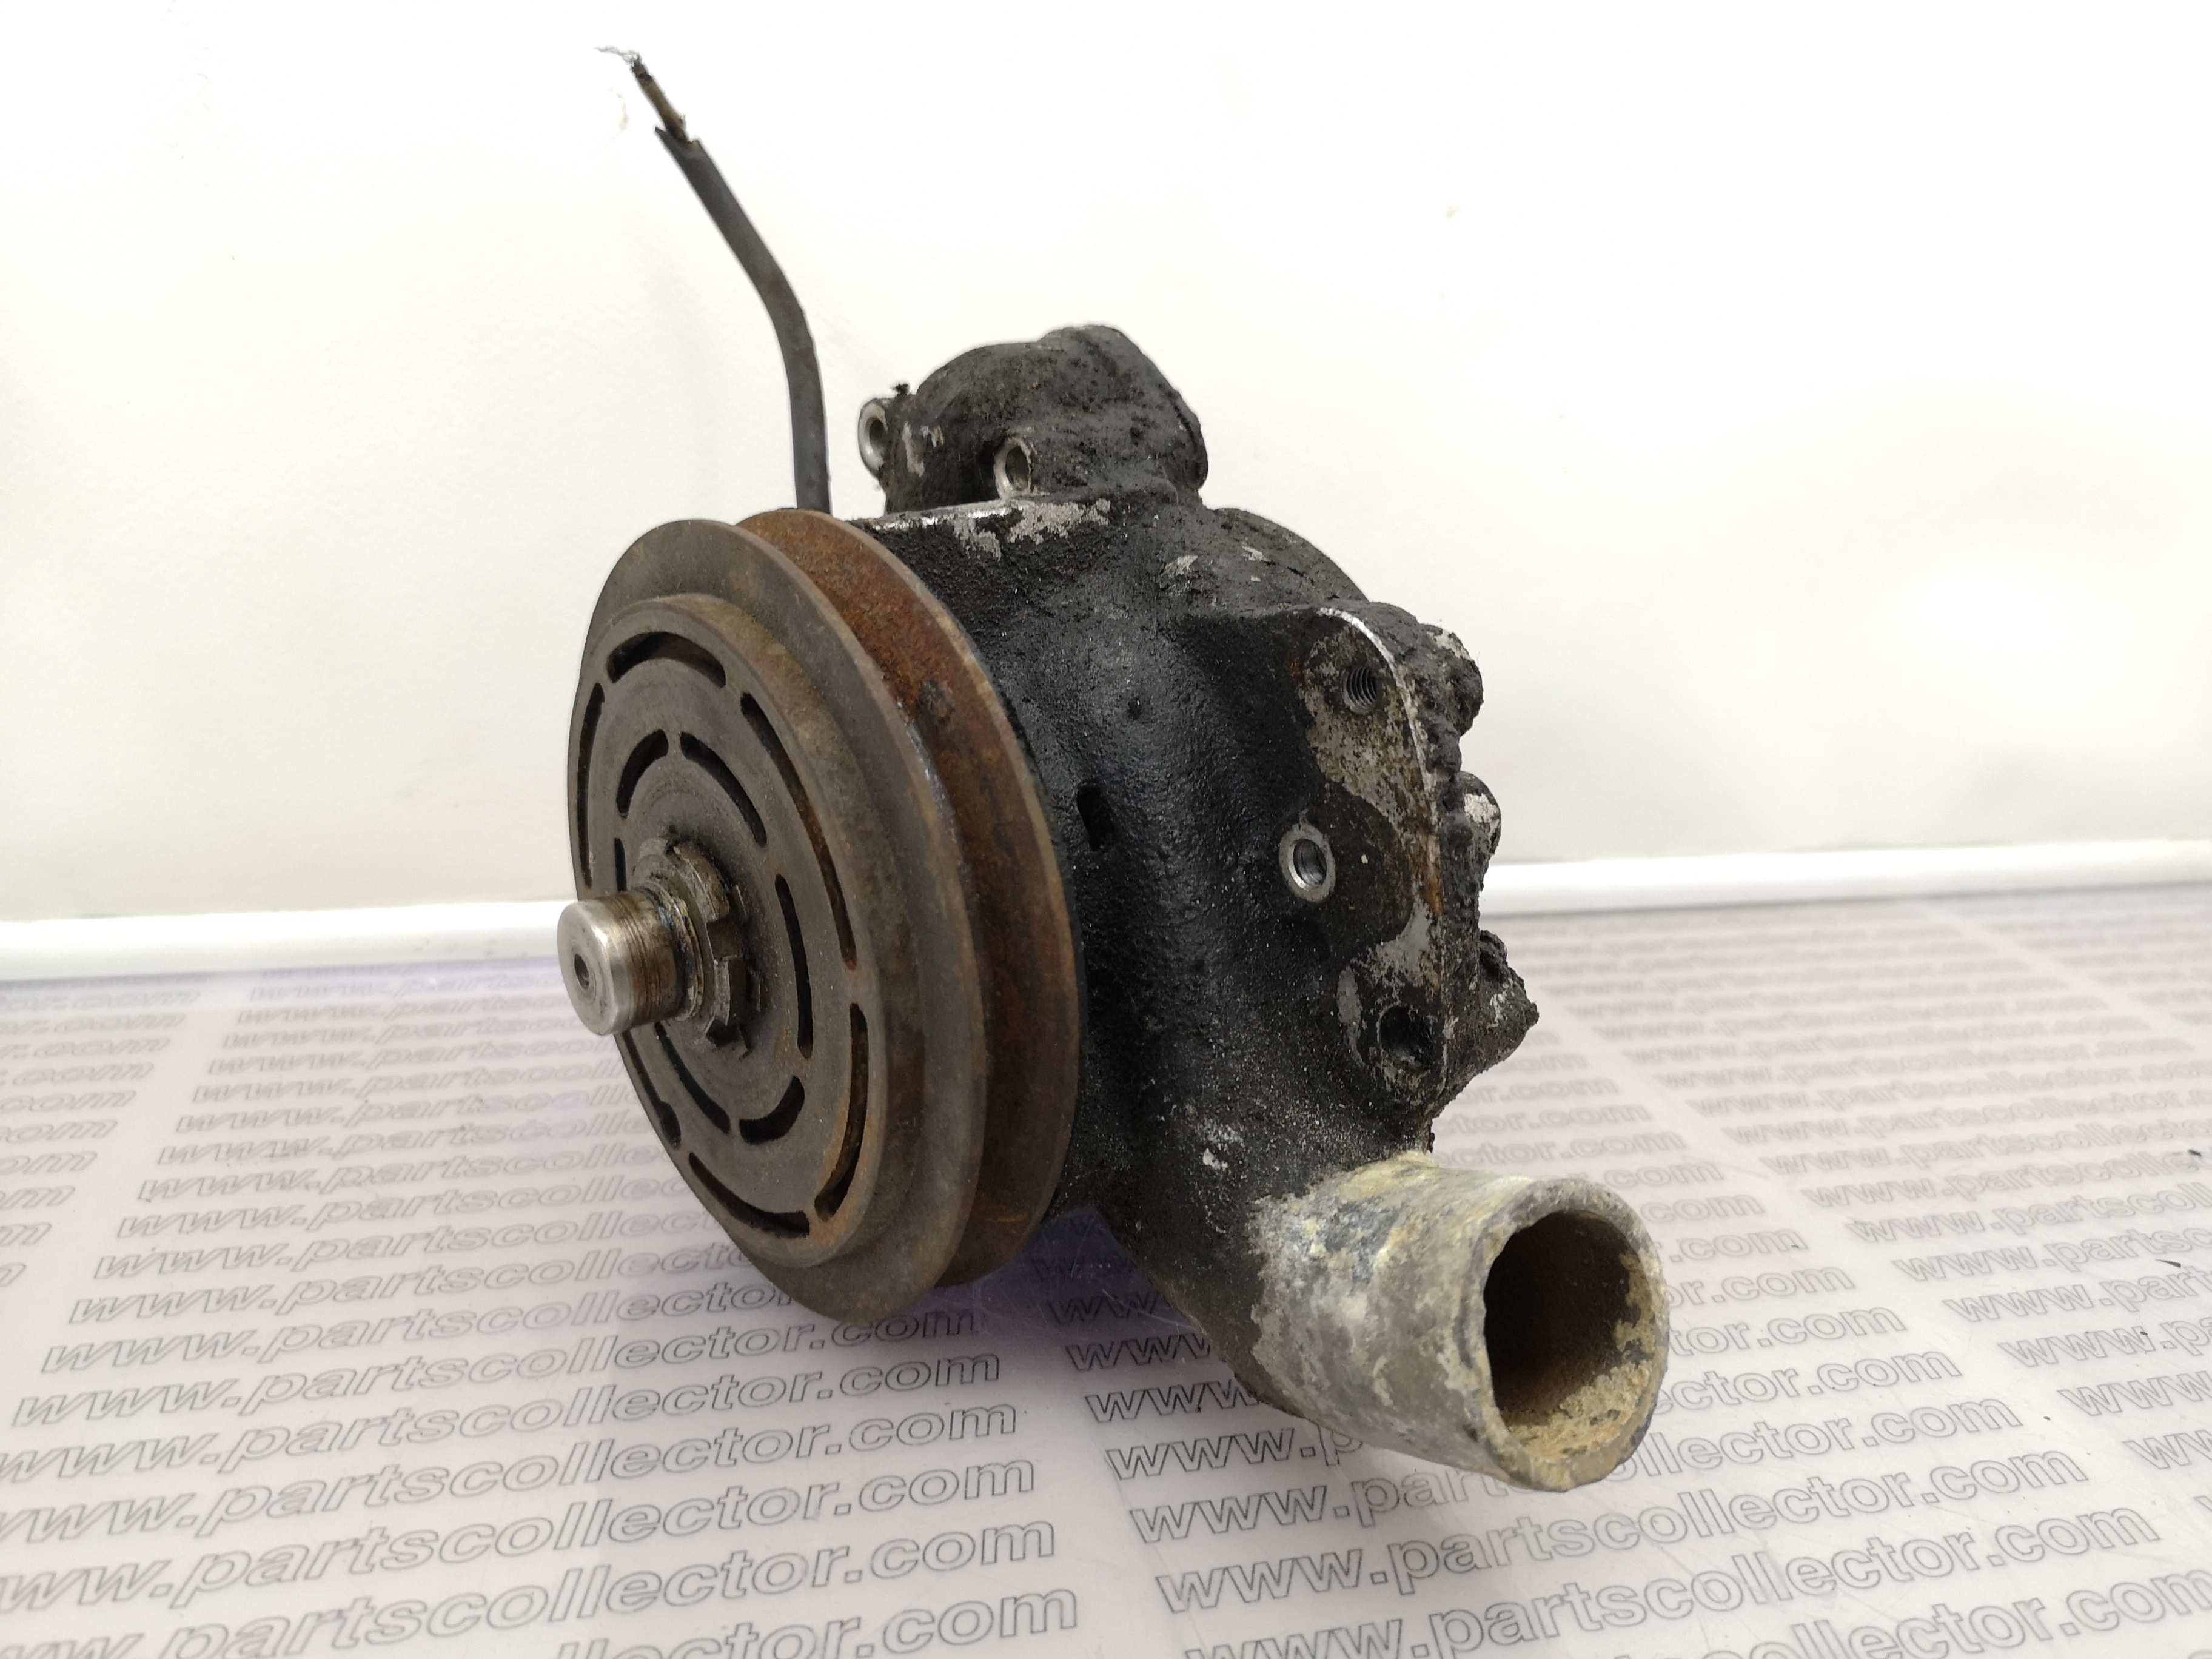 MASERATI SEBRING - Engine Parts - 1964